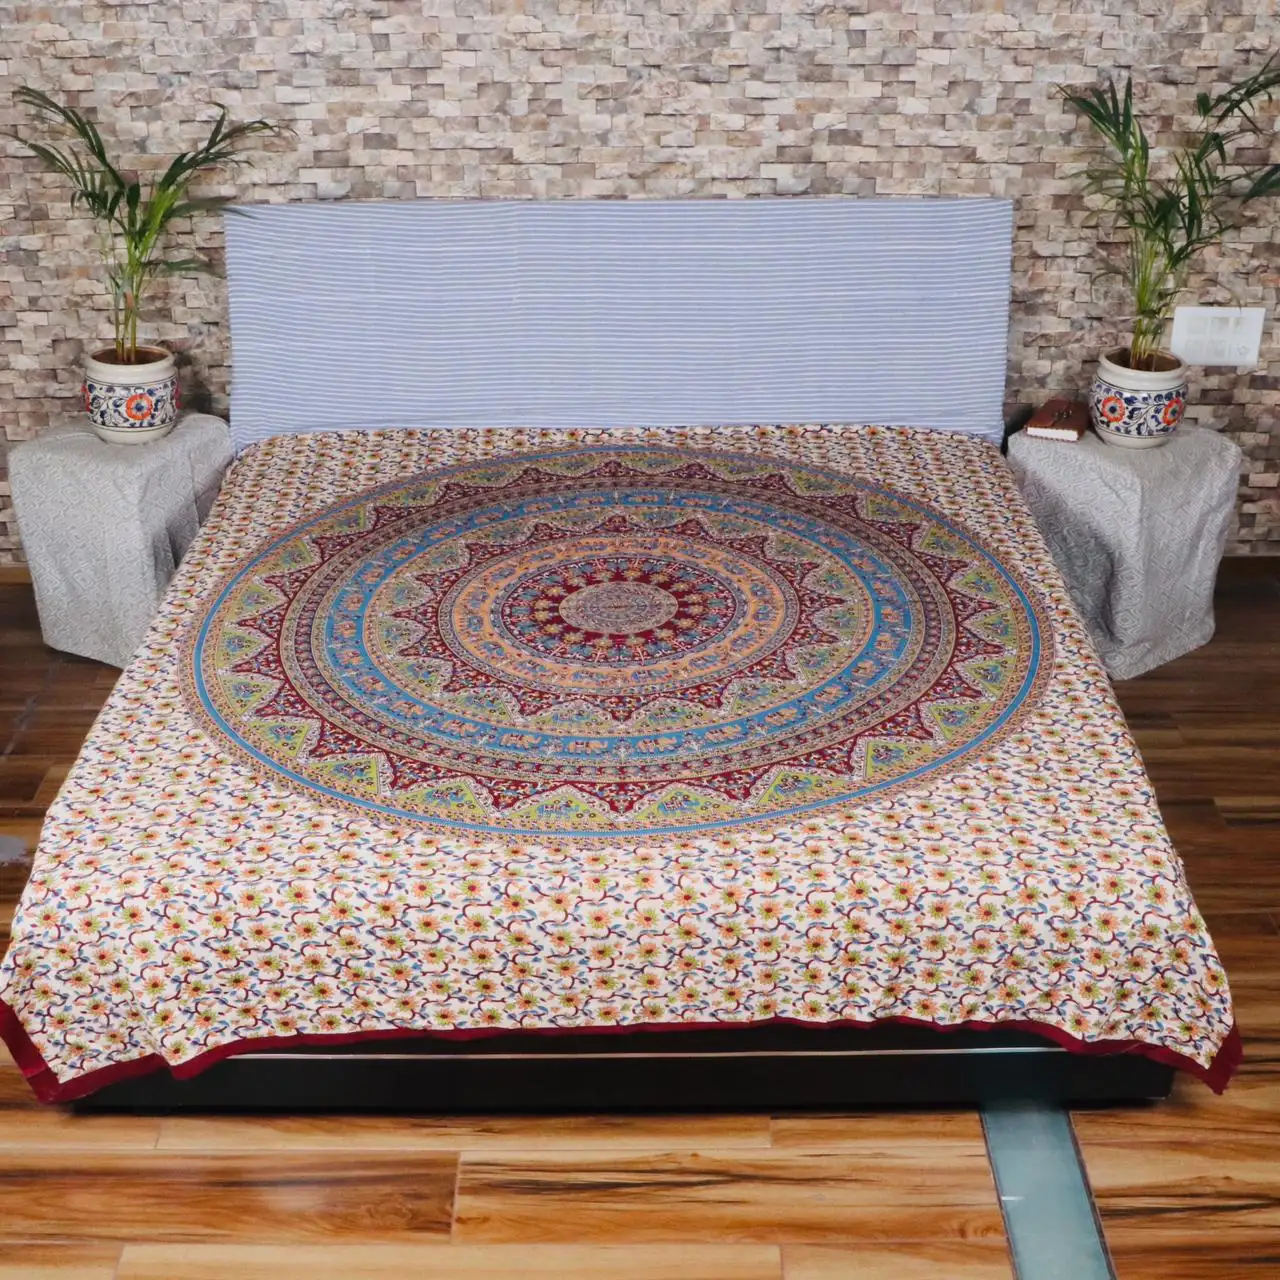 Jaipuri design de cama de algodão impresso para casa decoração fabricantes têxteis fornecedores e exportivos